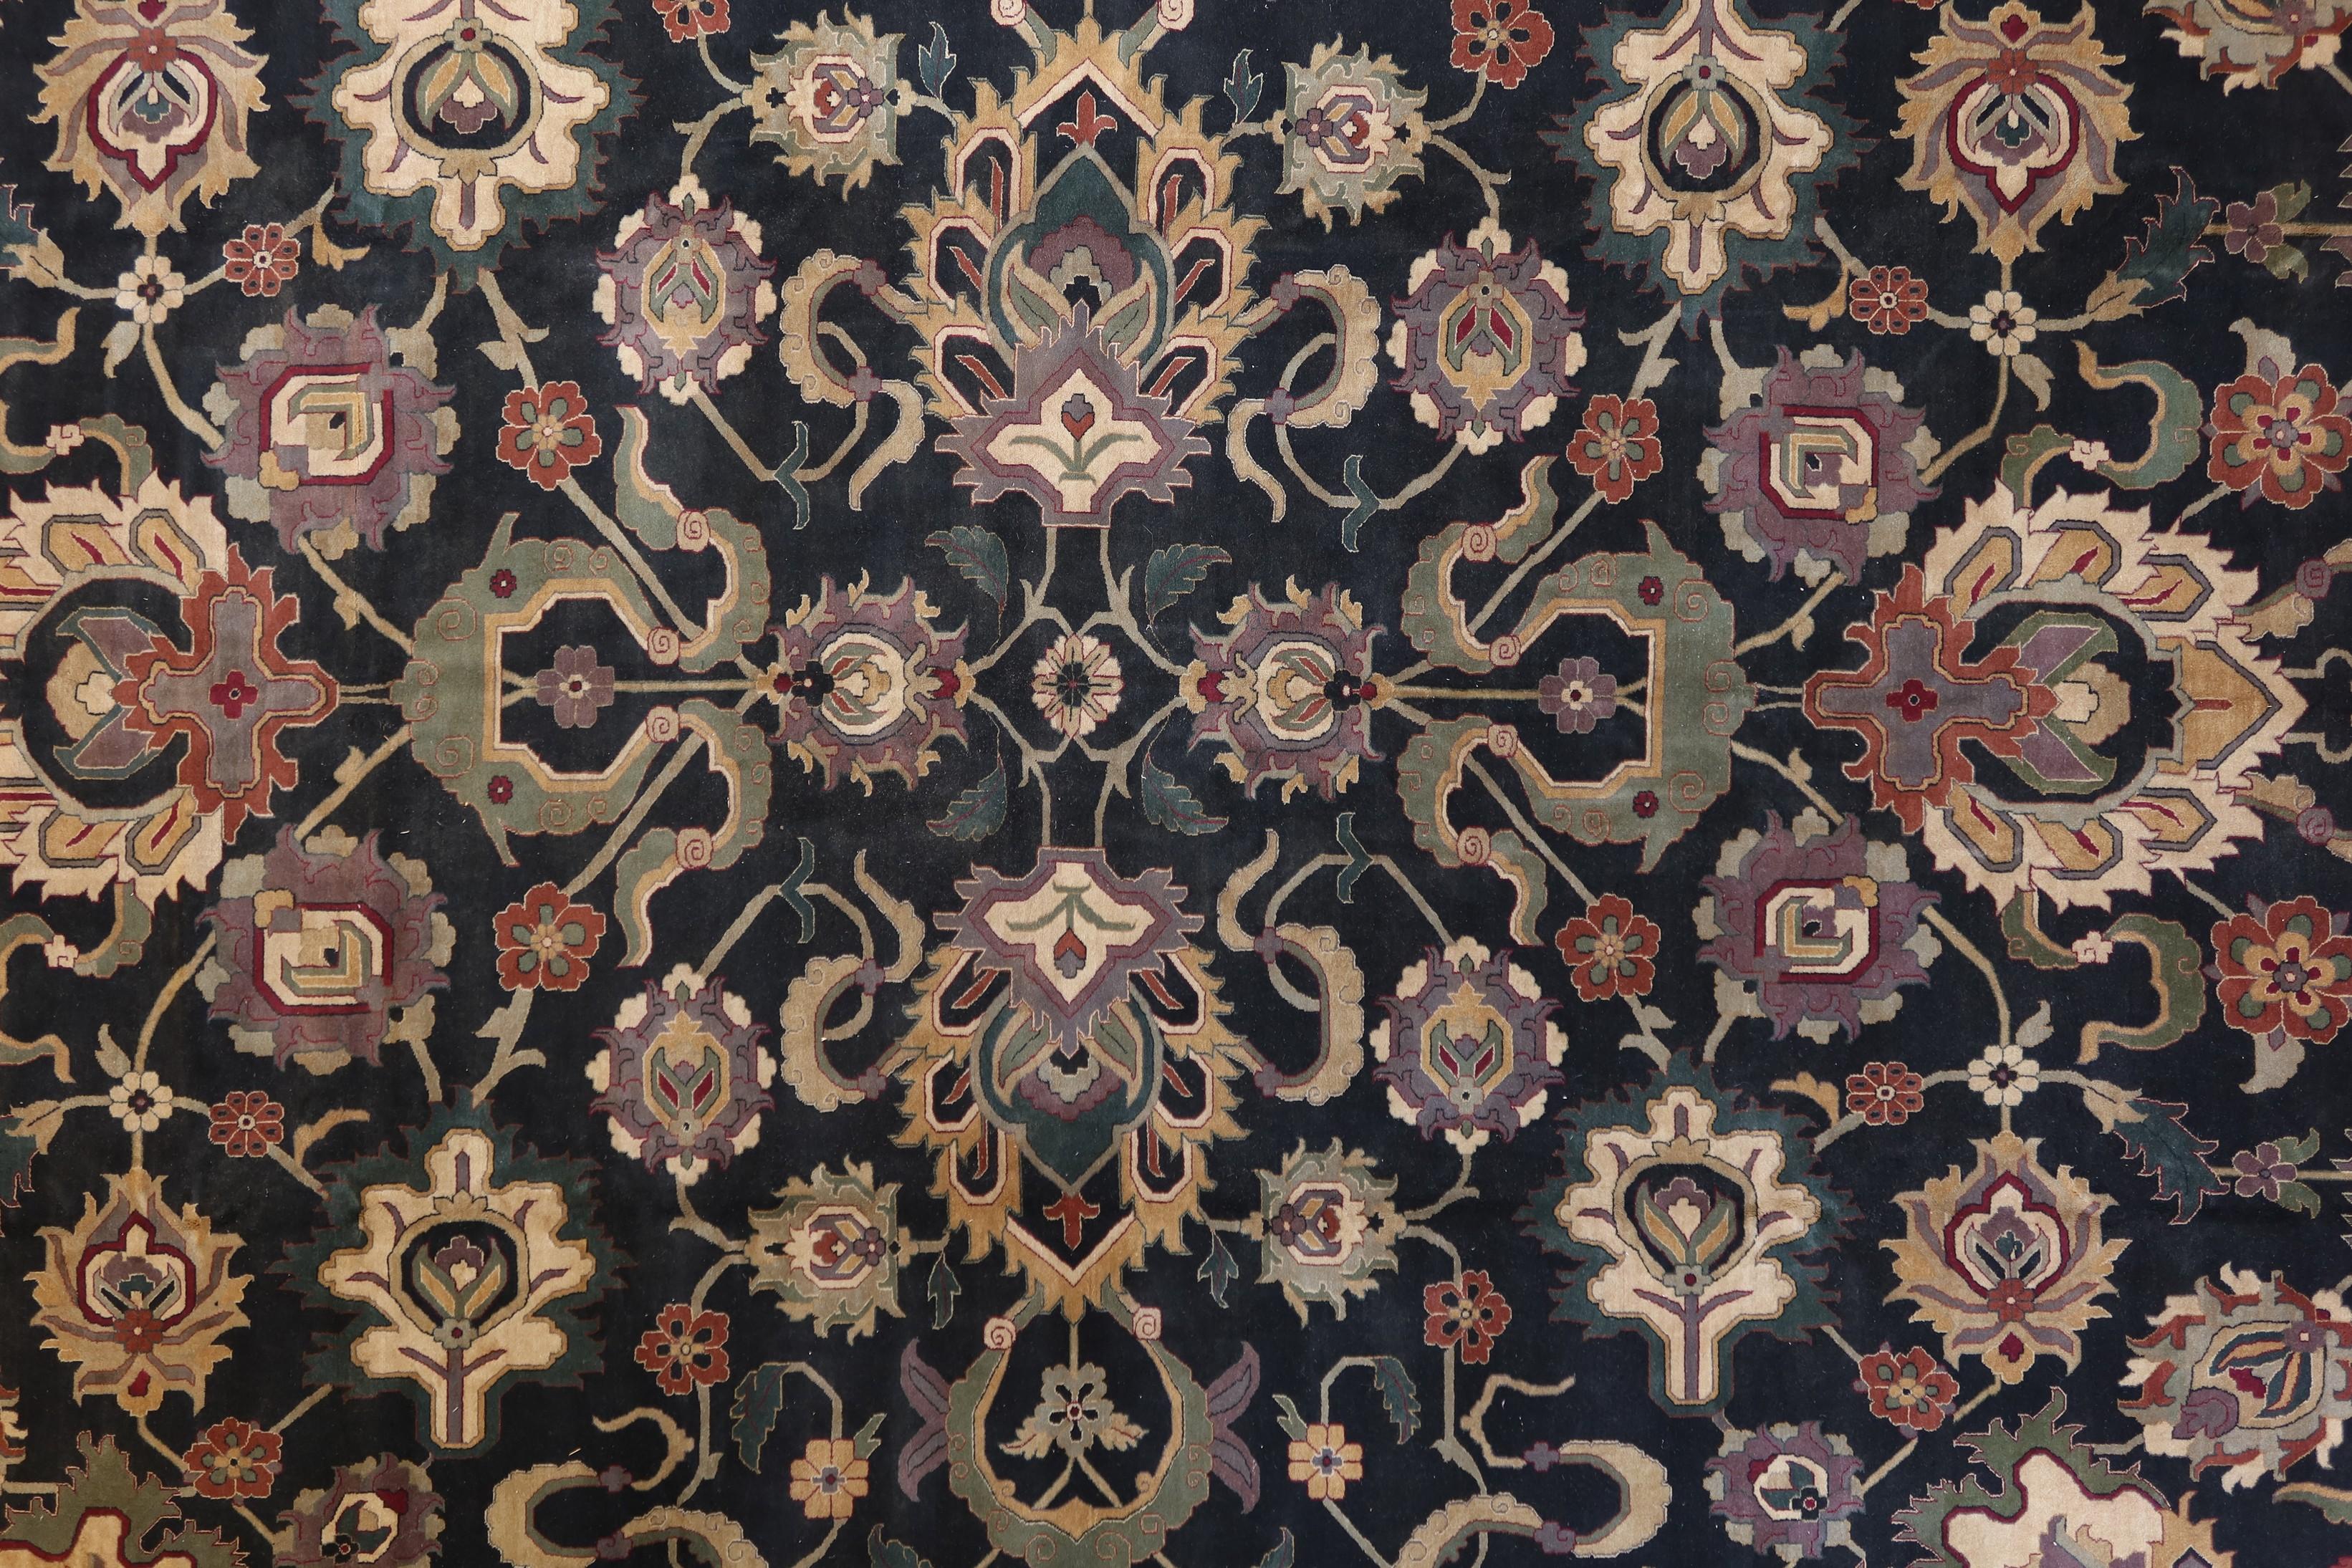 La collection de tapis Woven Arts est une recréation très fidèle des tapis originaux de la cour d'Agra en Inde, datant des XVIIe et XVIIIe siècles. Des fils néo-zélandais de haute qualité sont finement noués à la main pour créer ces tapis de luxe